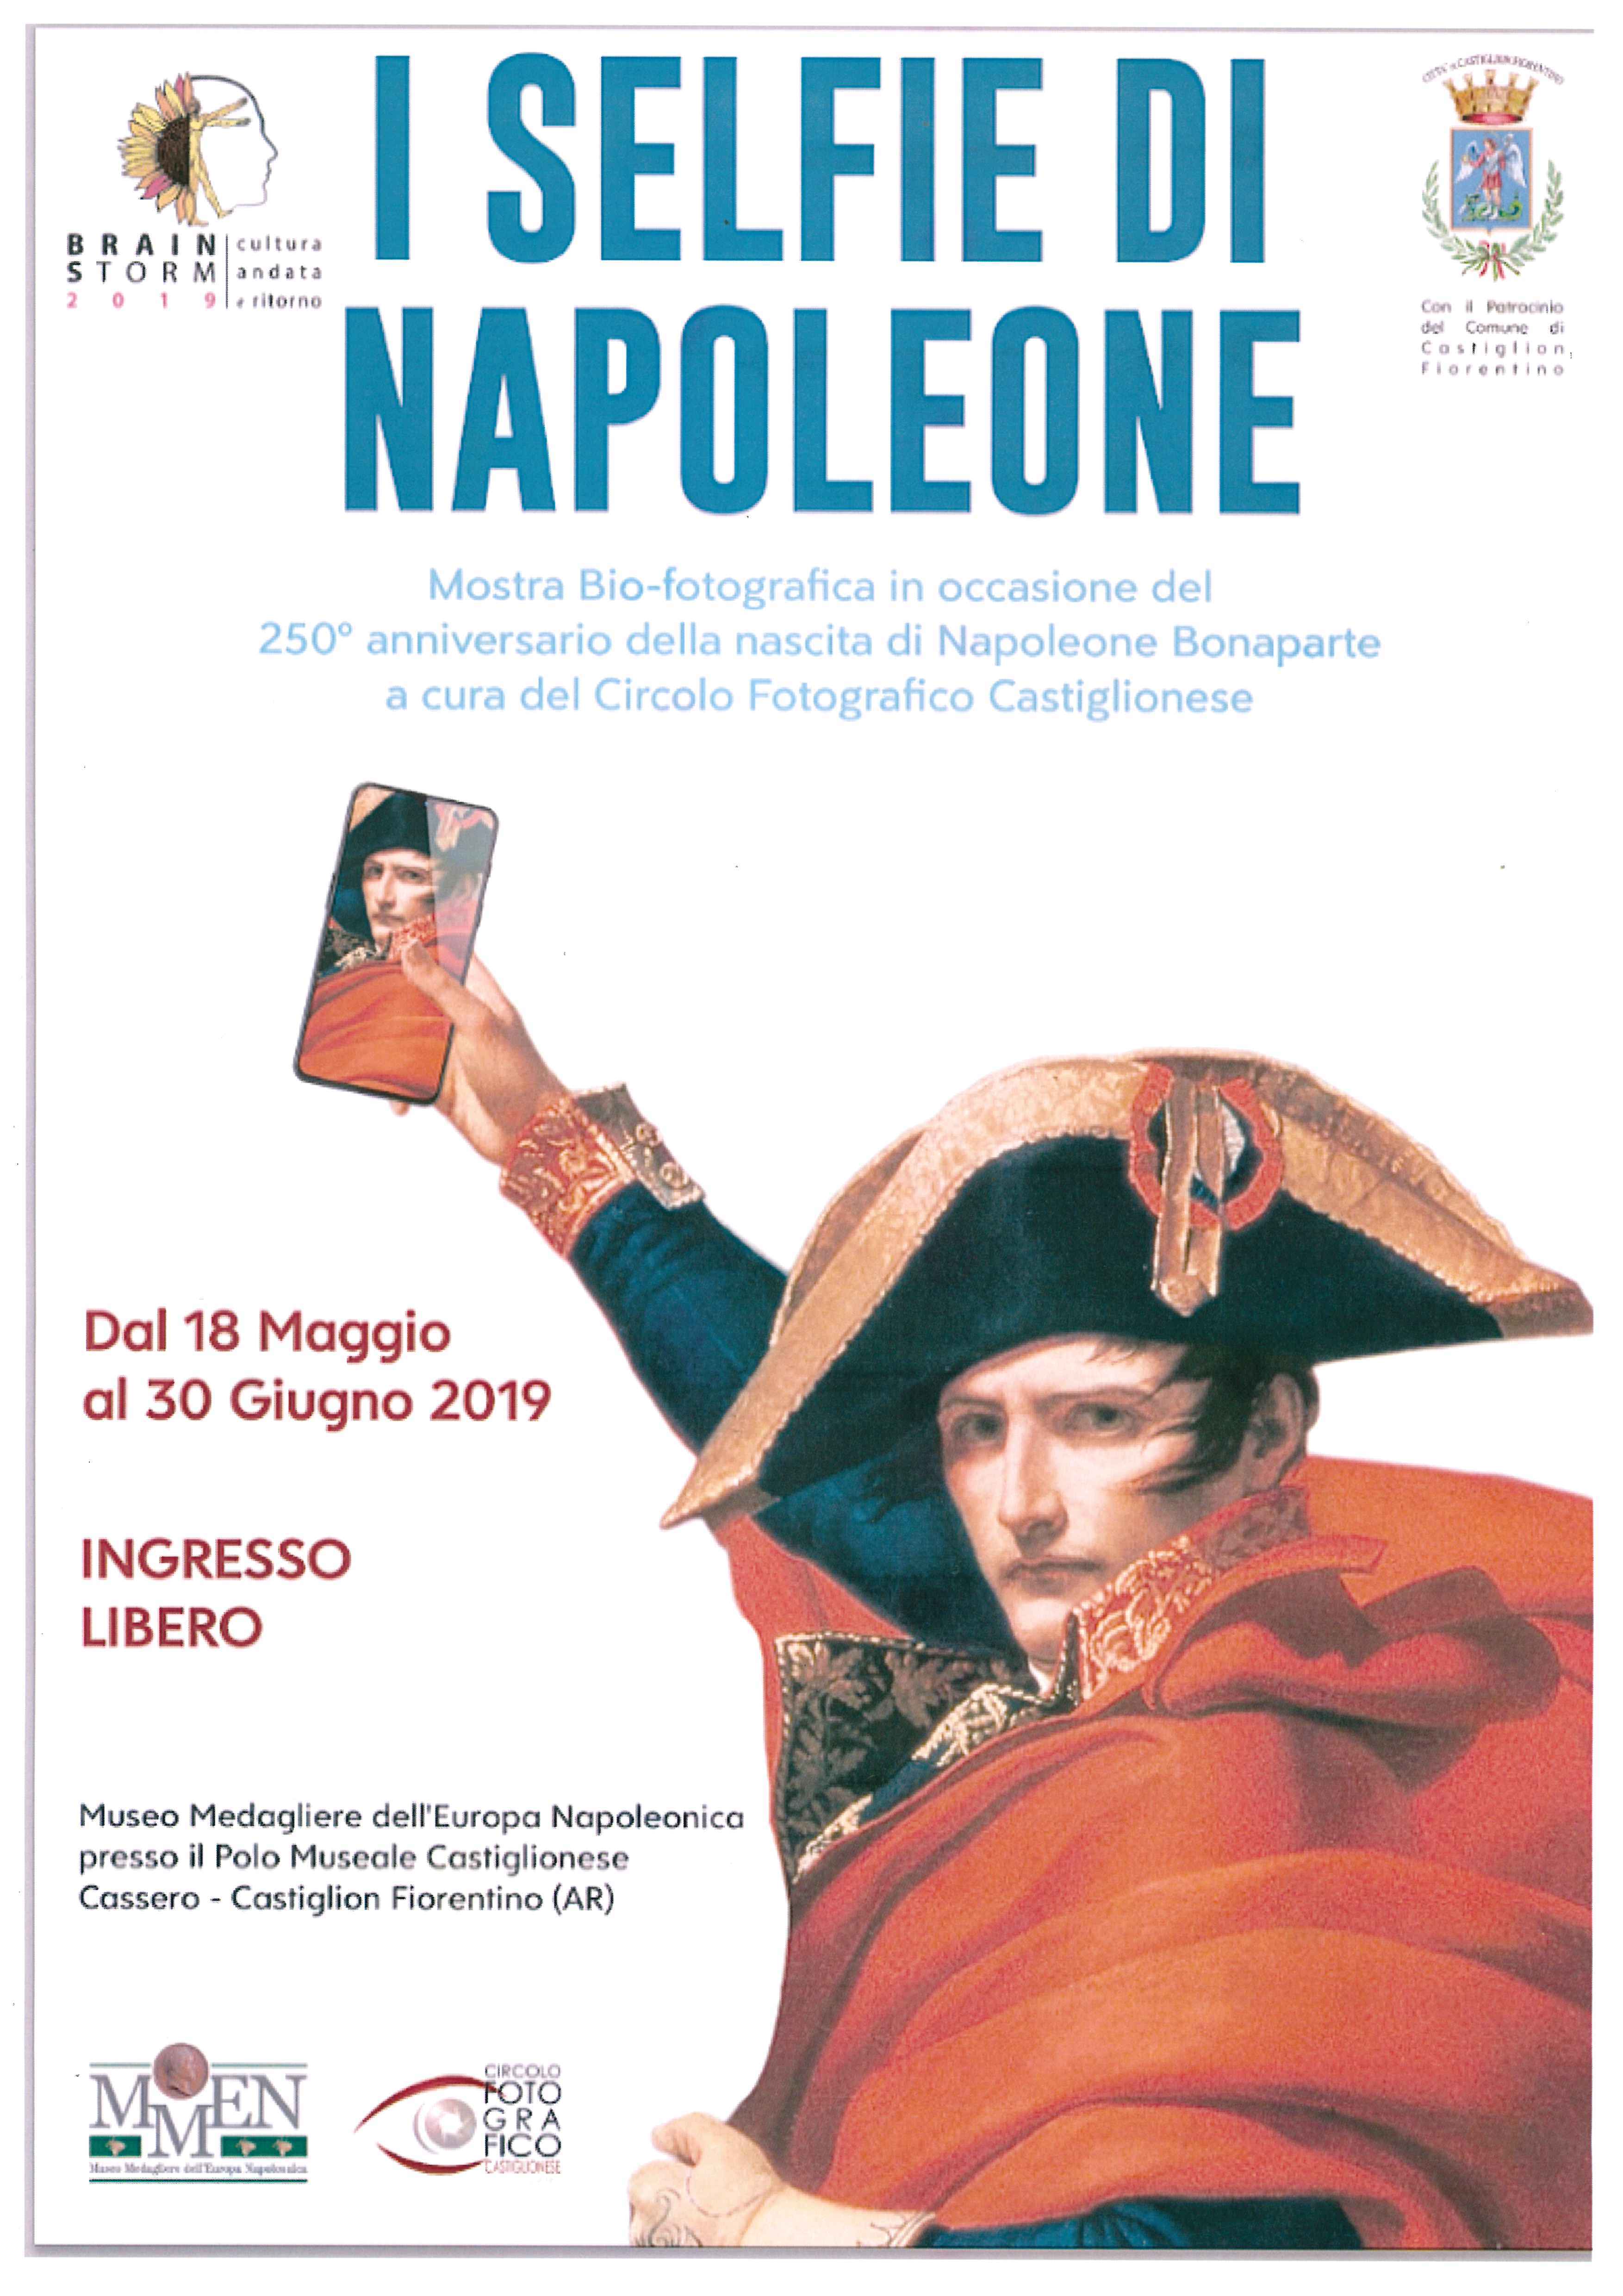 Appuntamento con la storia: quattro eventi nel segno di Napoleone con il Principe Bonaparte